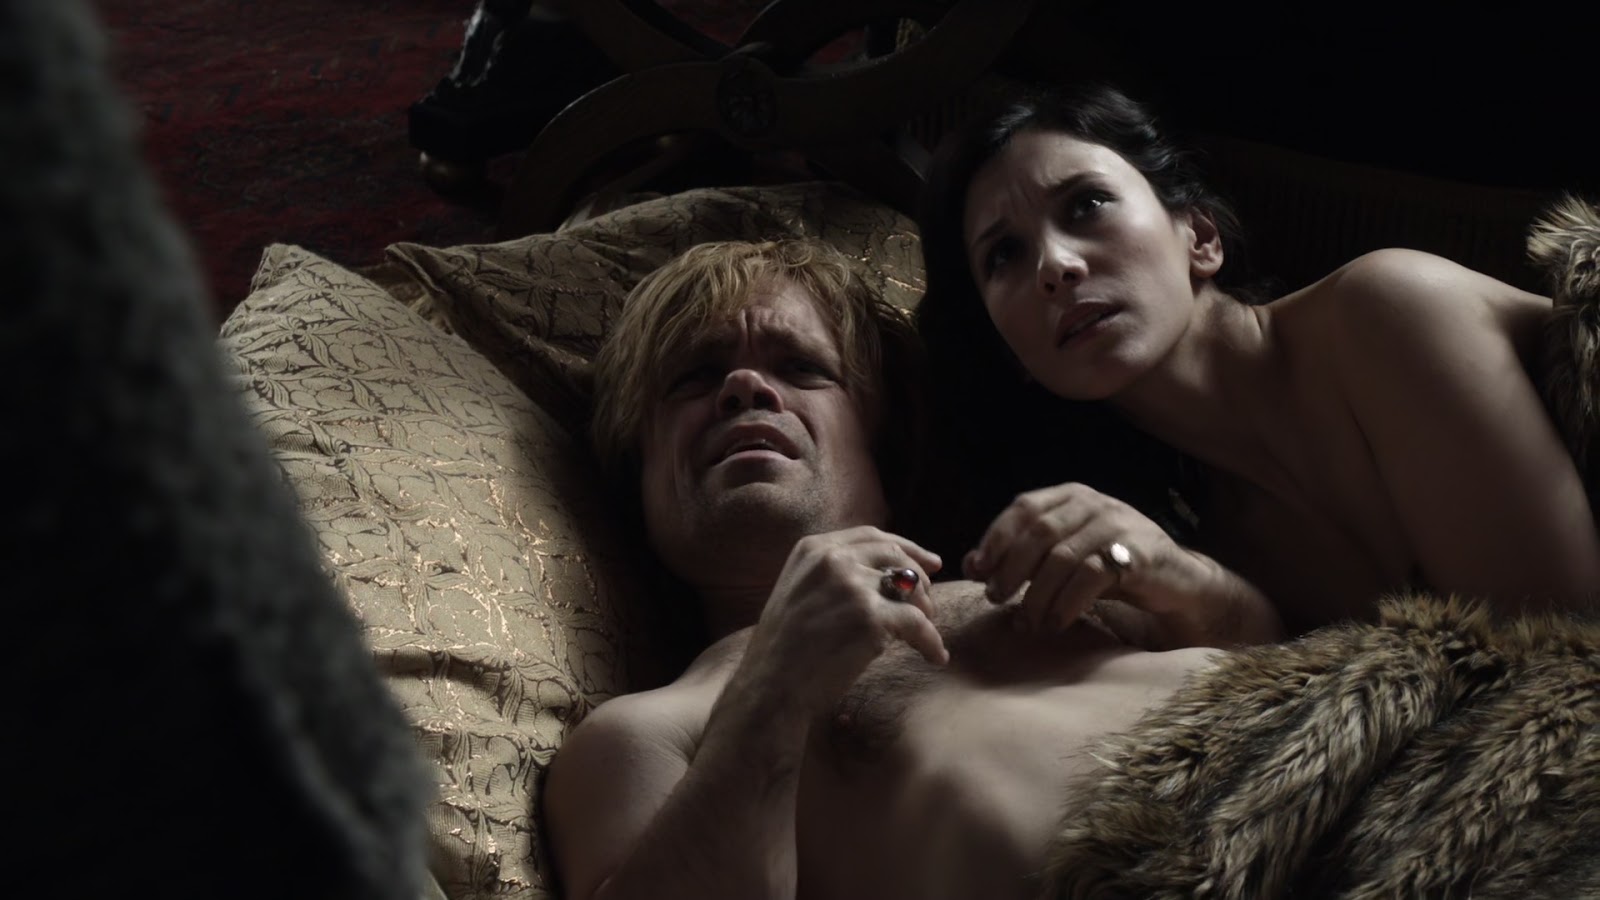 Peter Dinklage shirtless in Game Of Thrones 1-09 "Baelor" .